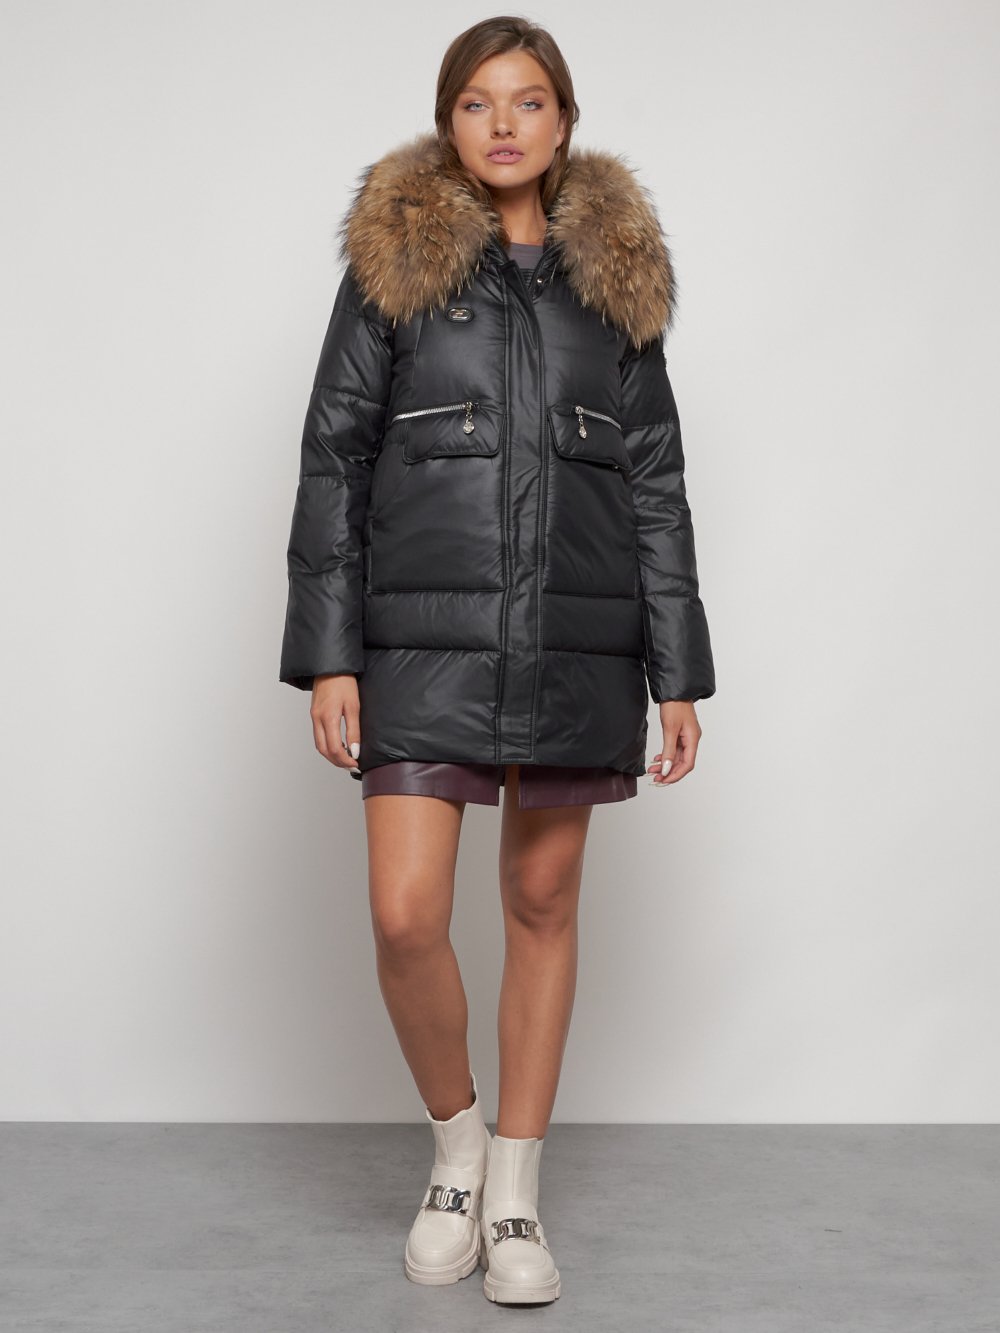 Купить куртку женскую зимнюю оптом от производителя недорого в Москве 132298Ch